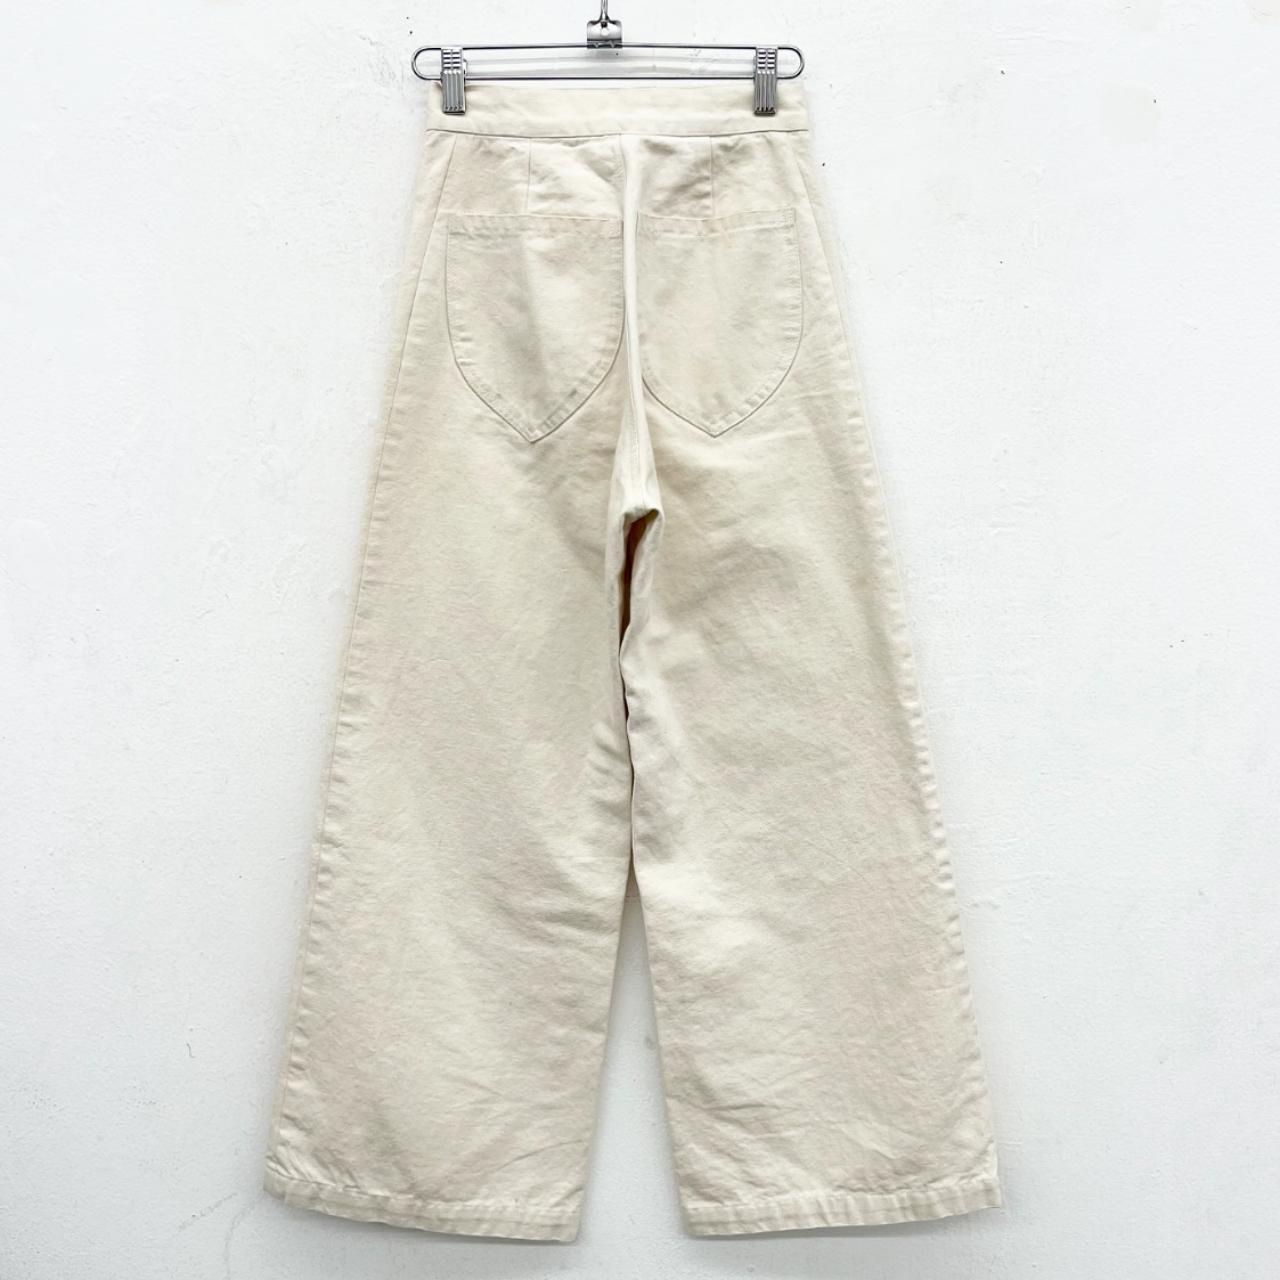 Lykke Wullf Women's Cream Trousers (2)